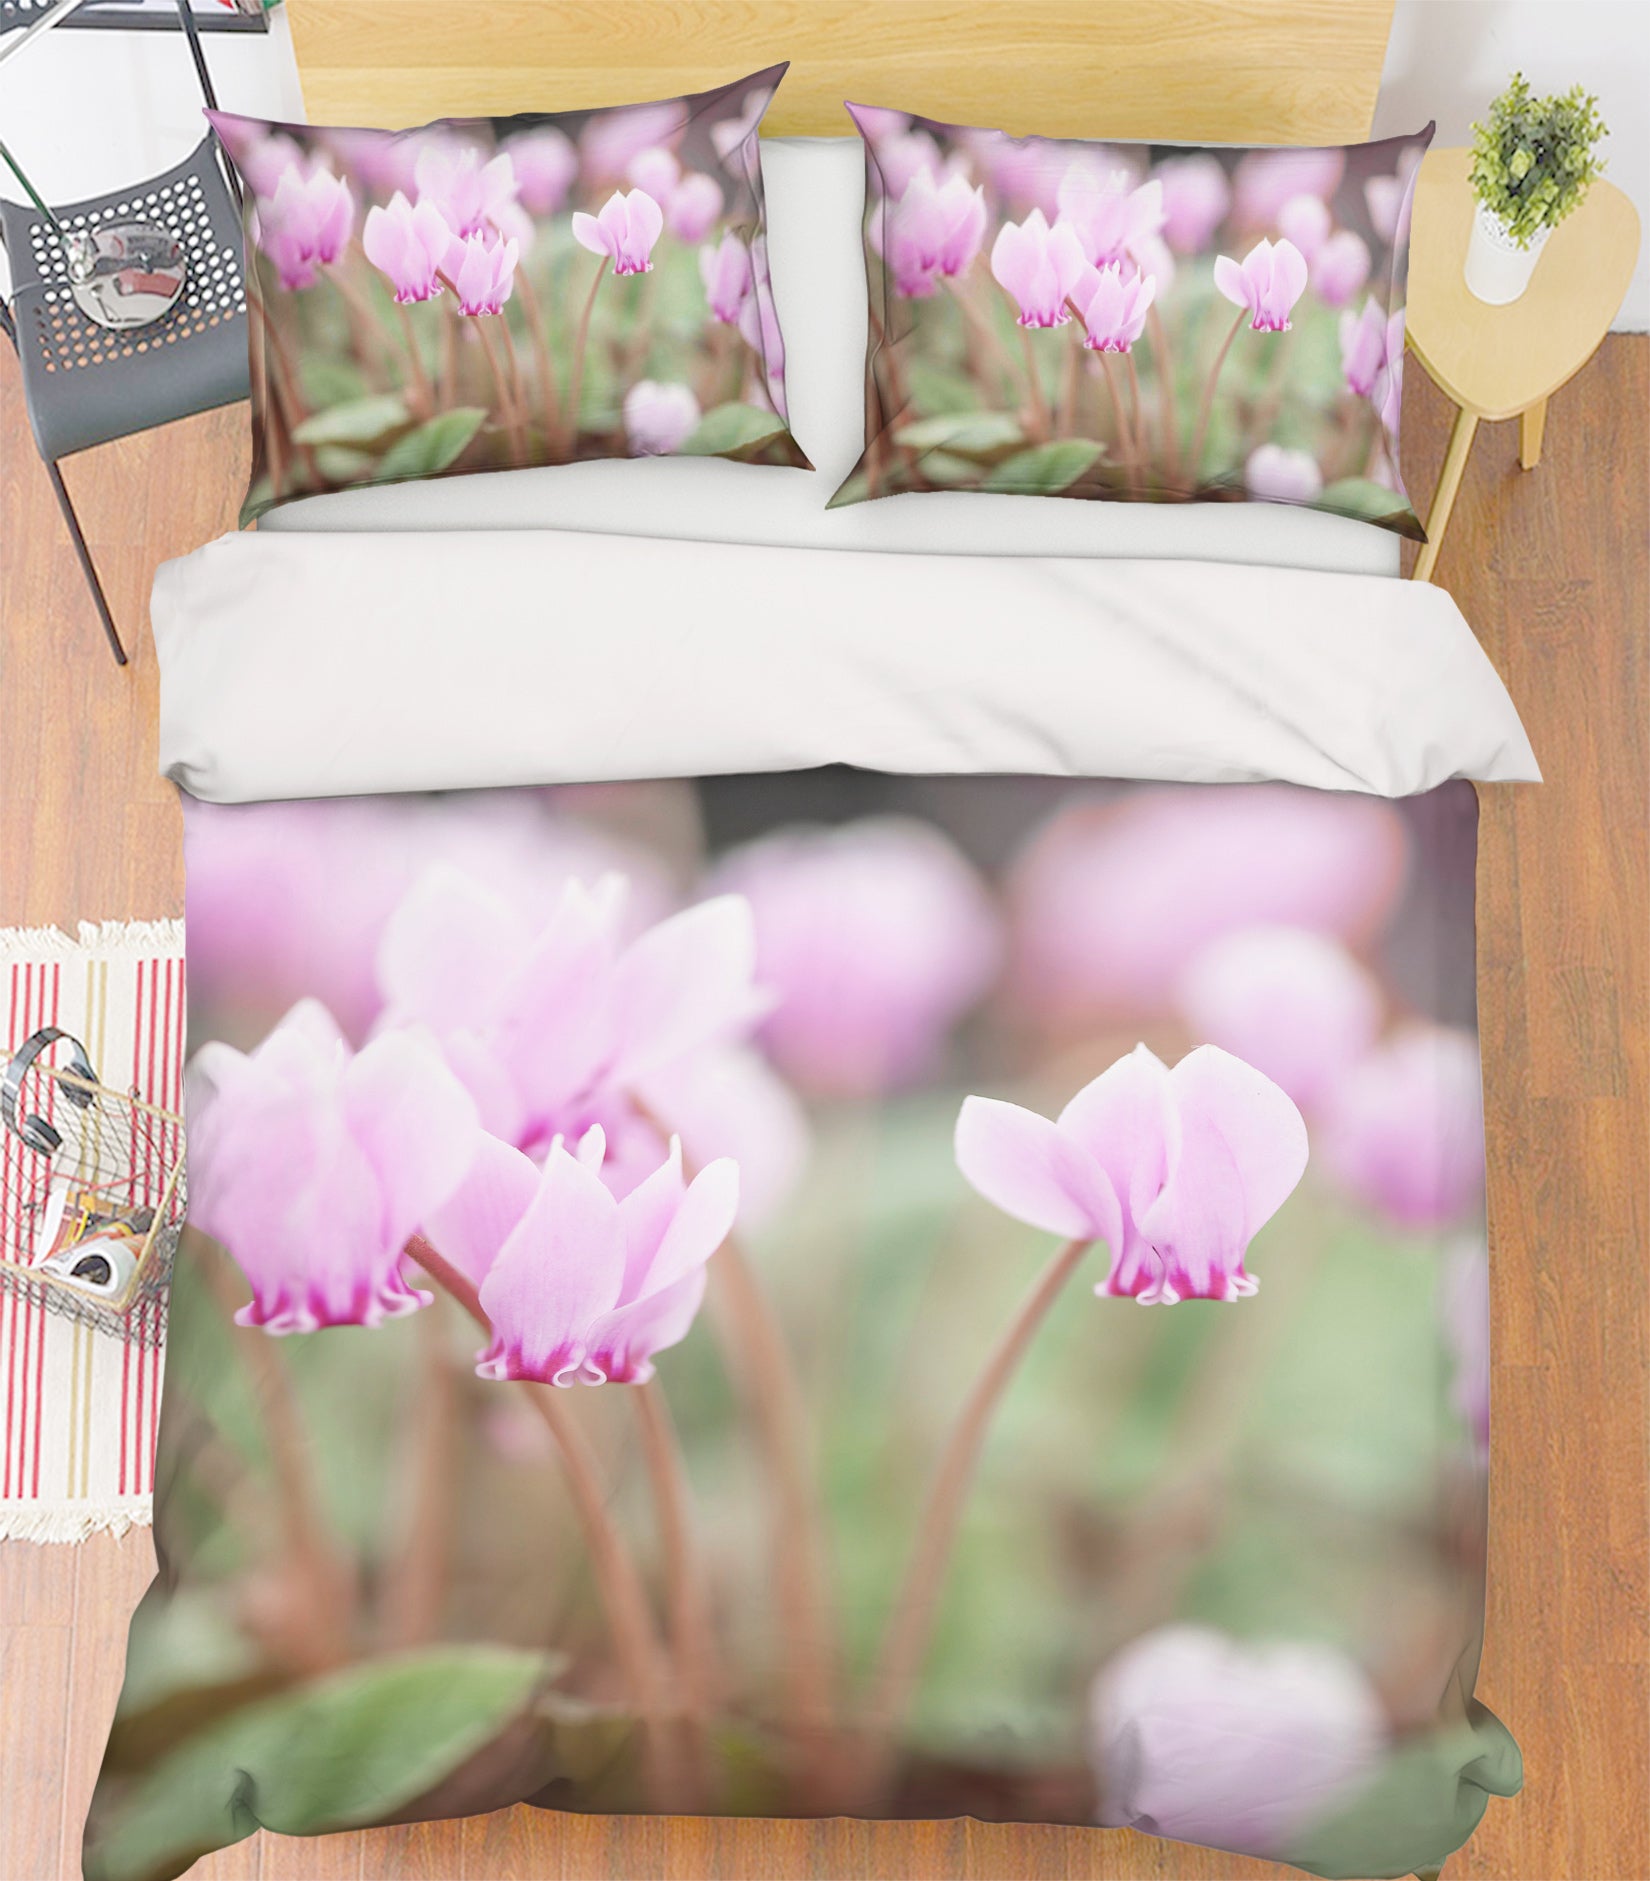 3D Beautiful Petals 7004 Assaf Frank Bedding Bed Pillowcases Quilt Cover Duvet Cover